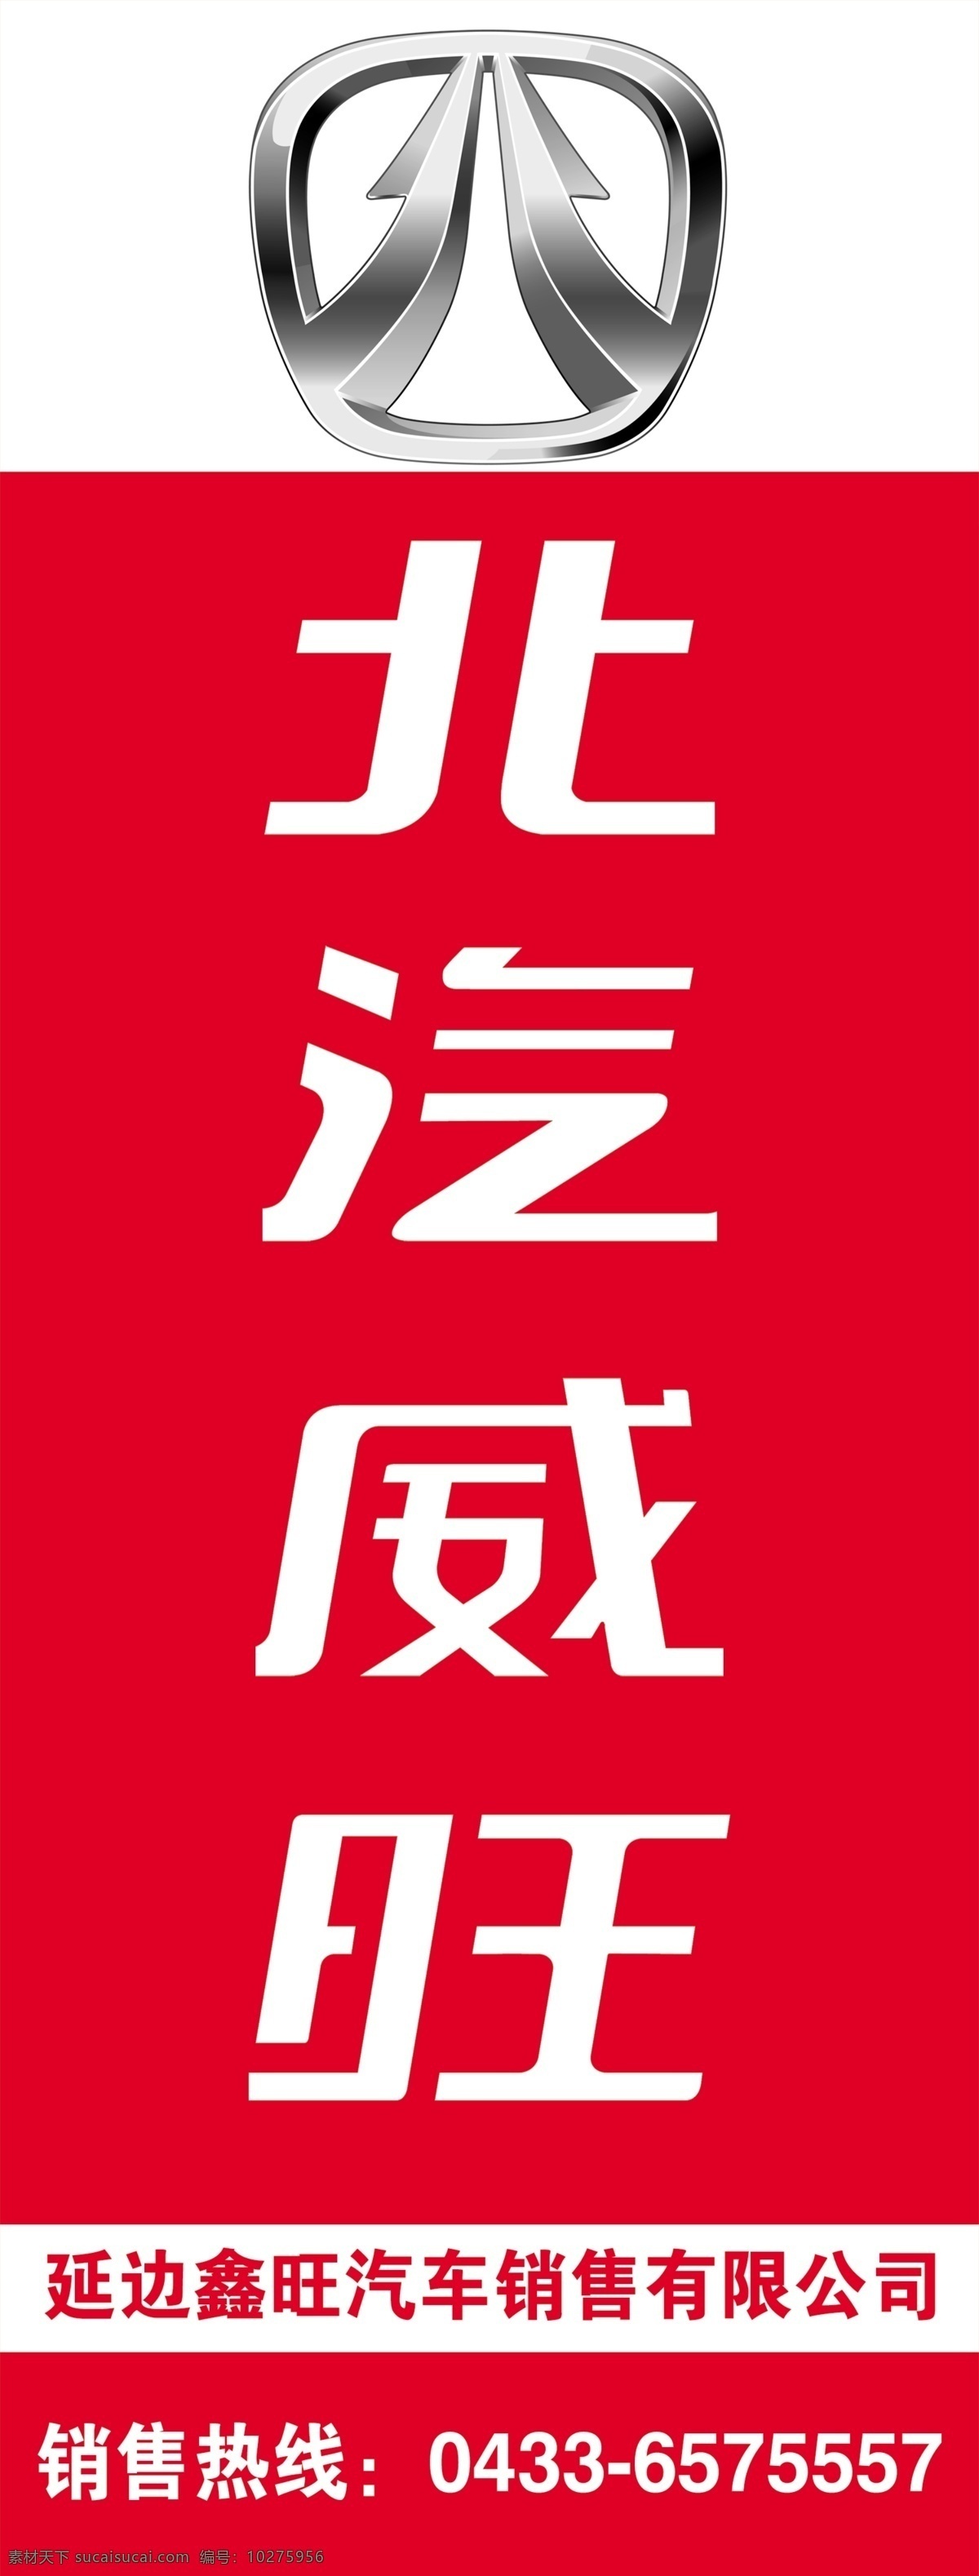 北汽威旺 北汽标志 logo 汽贸公司 展架 旗帜 广告 展板模板